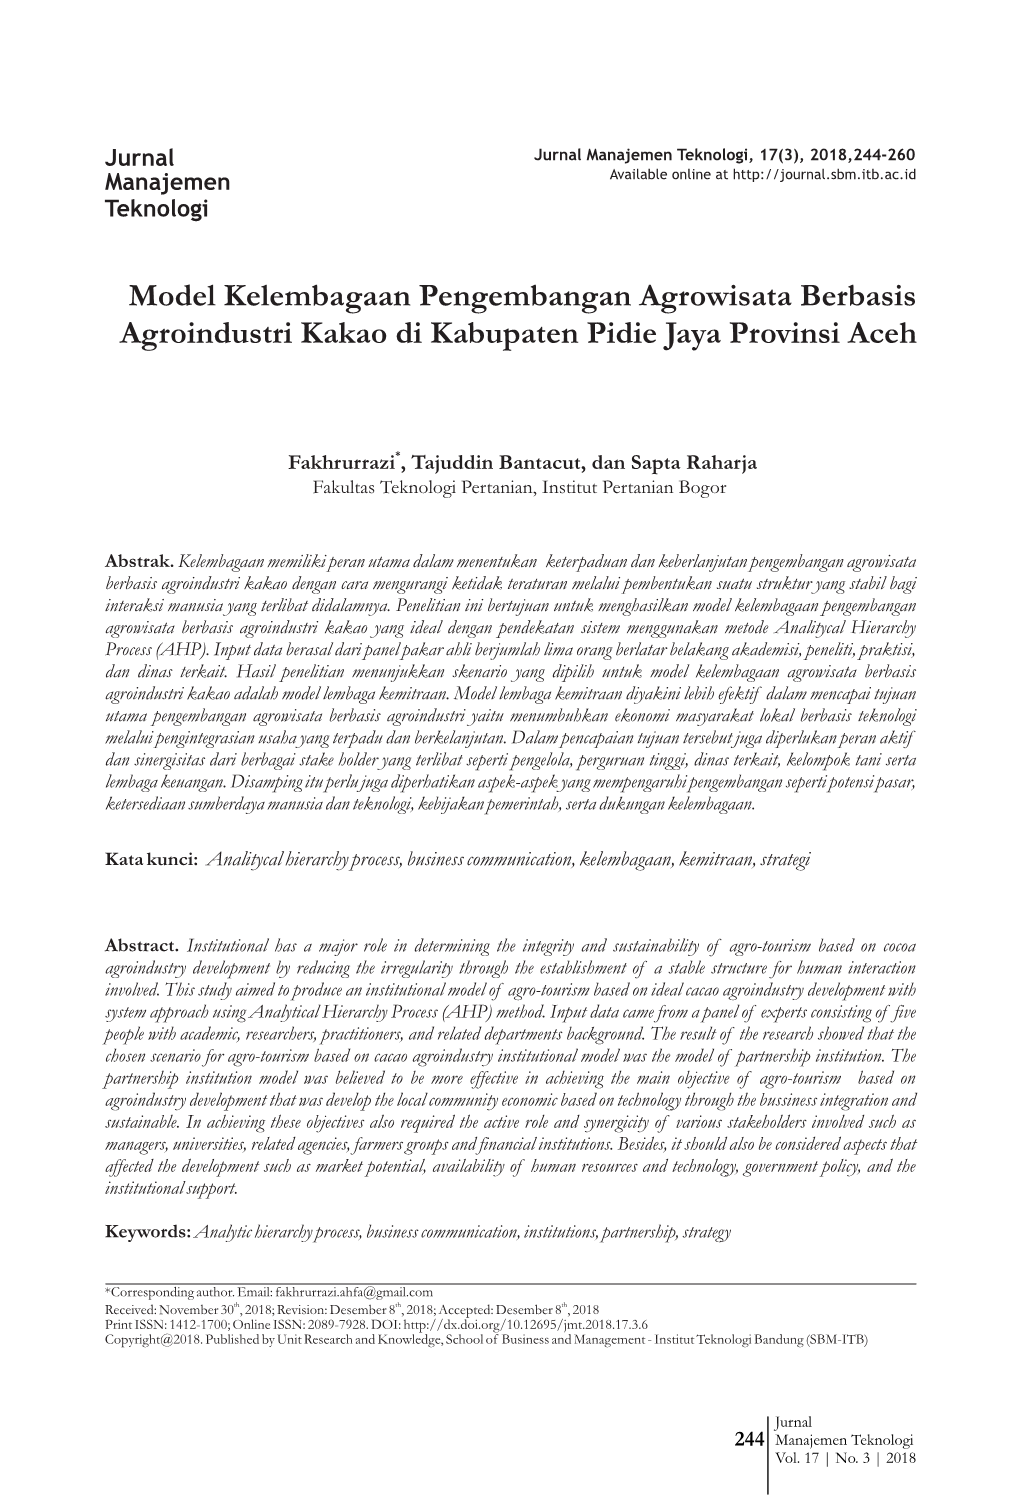 Model Kelembagaan Pengembangan Agrowisata Berbasis Agroindustri Kakao Di Kabupaten Pidie Jaya Provinsi Aceh